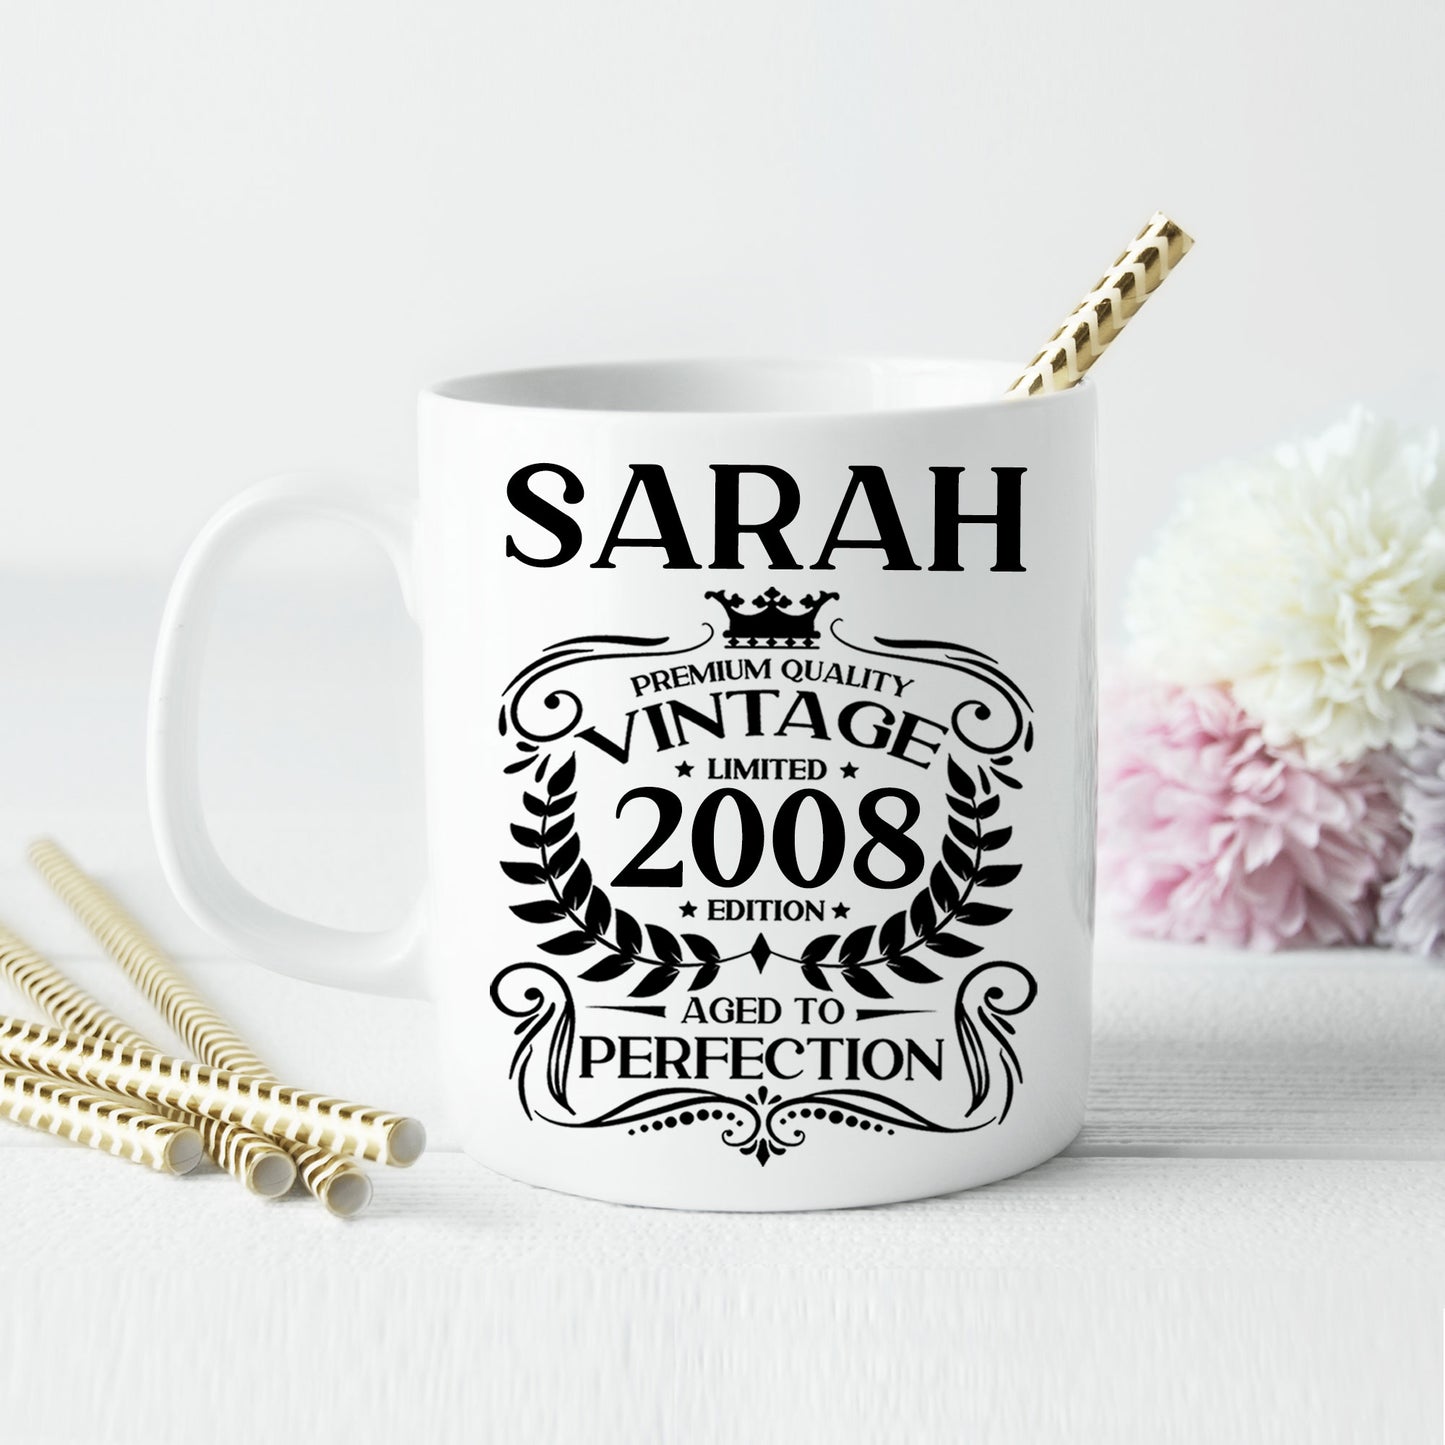 Personalised Vintage 2008 Mug and/or Coaster  - Always Looking Good -   